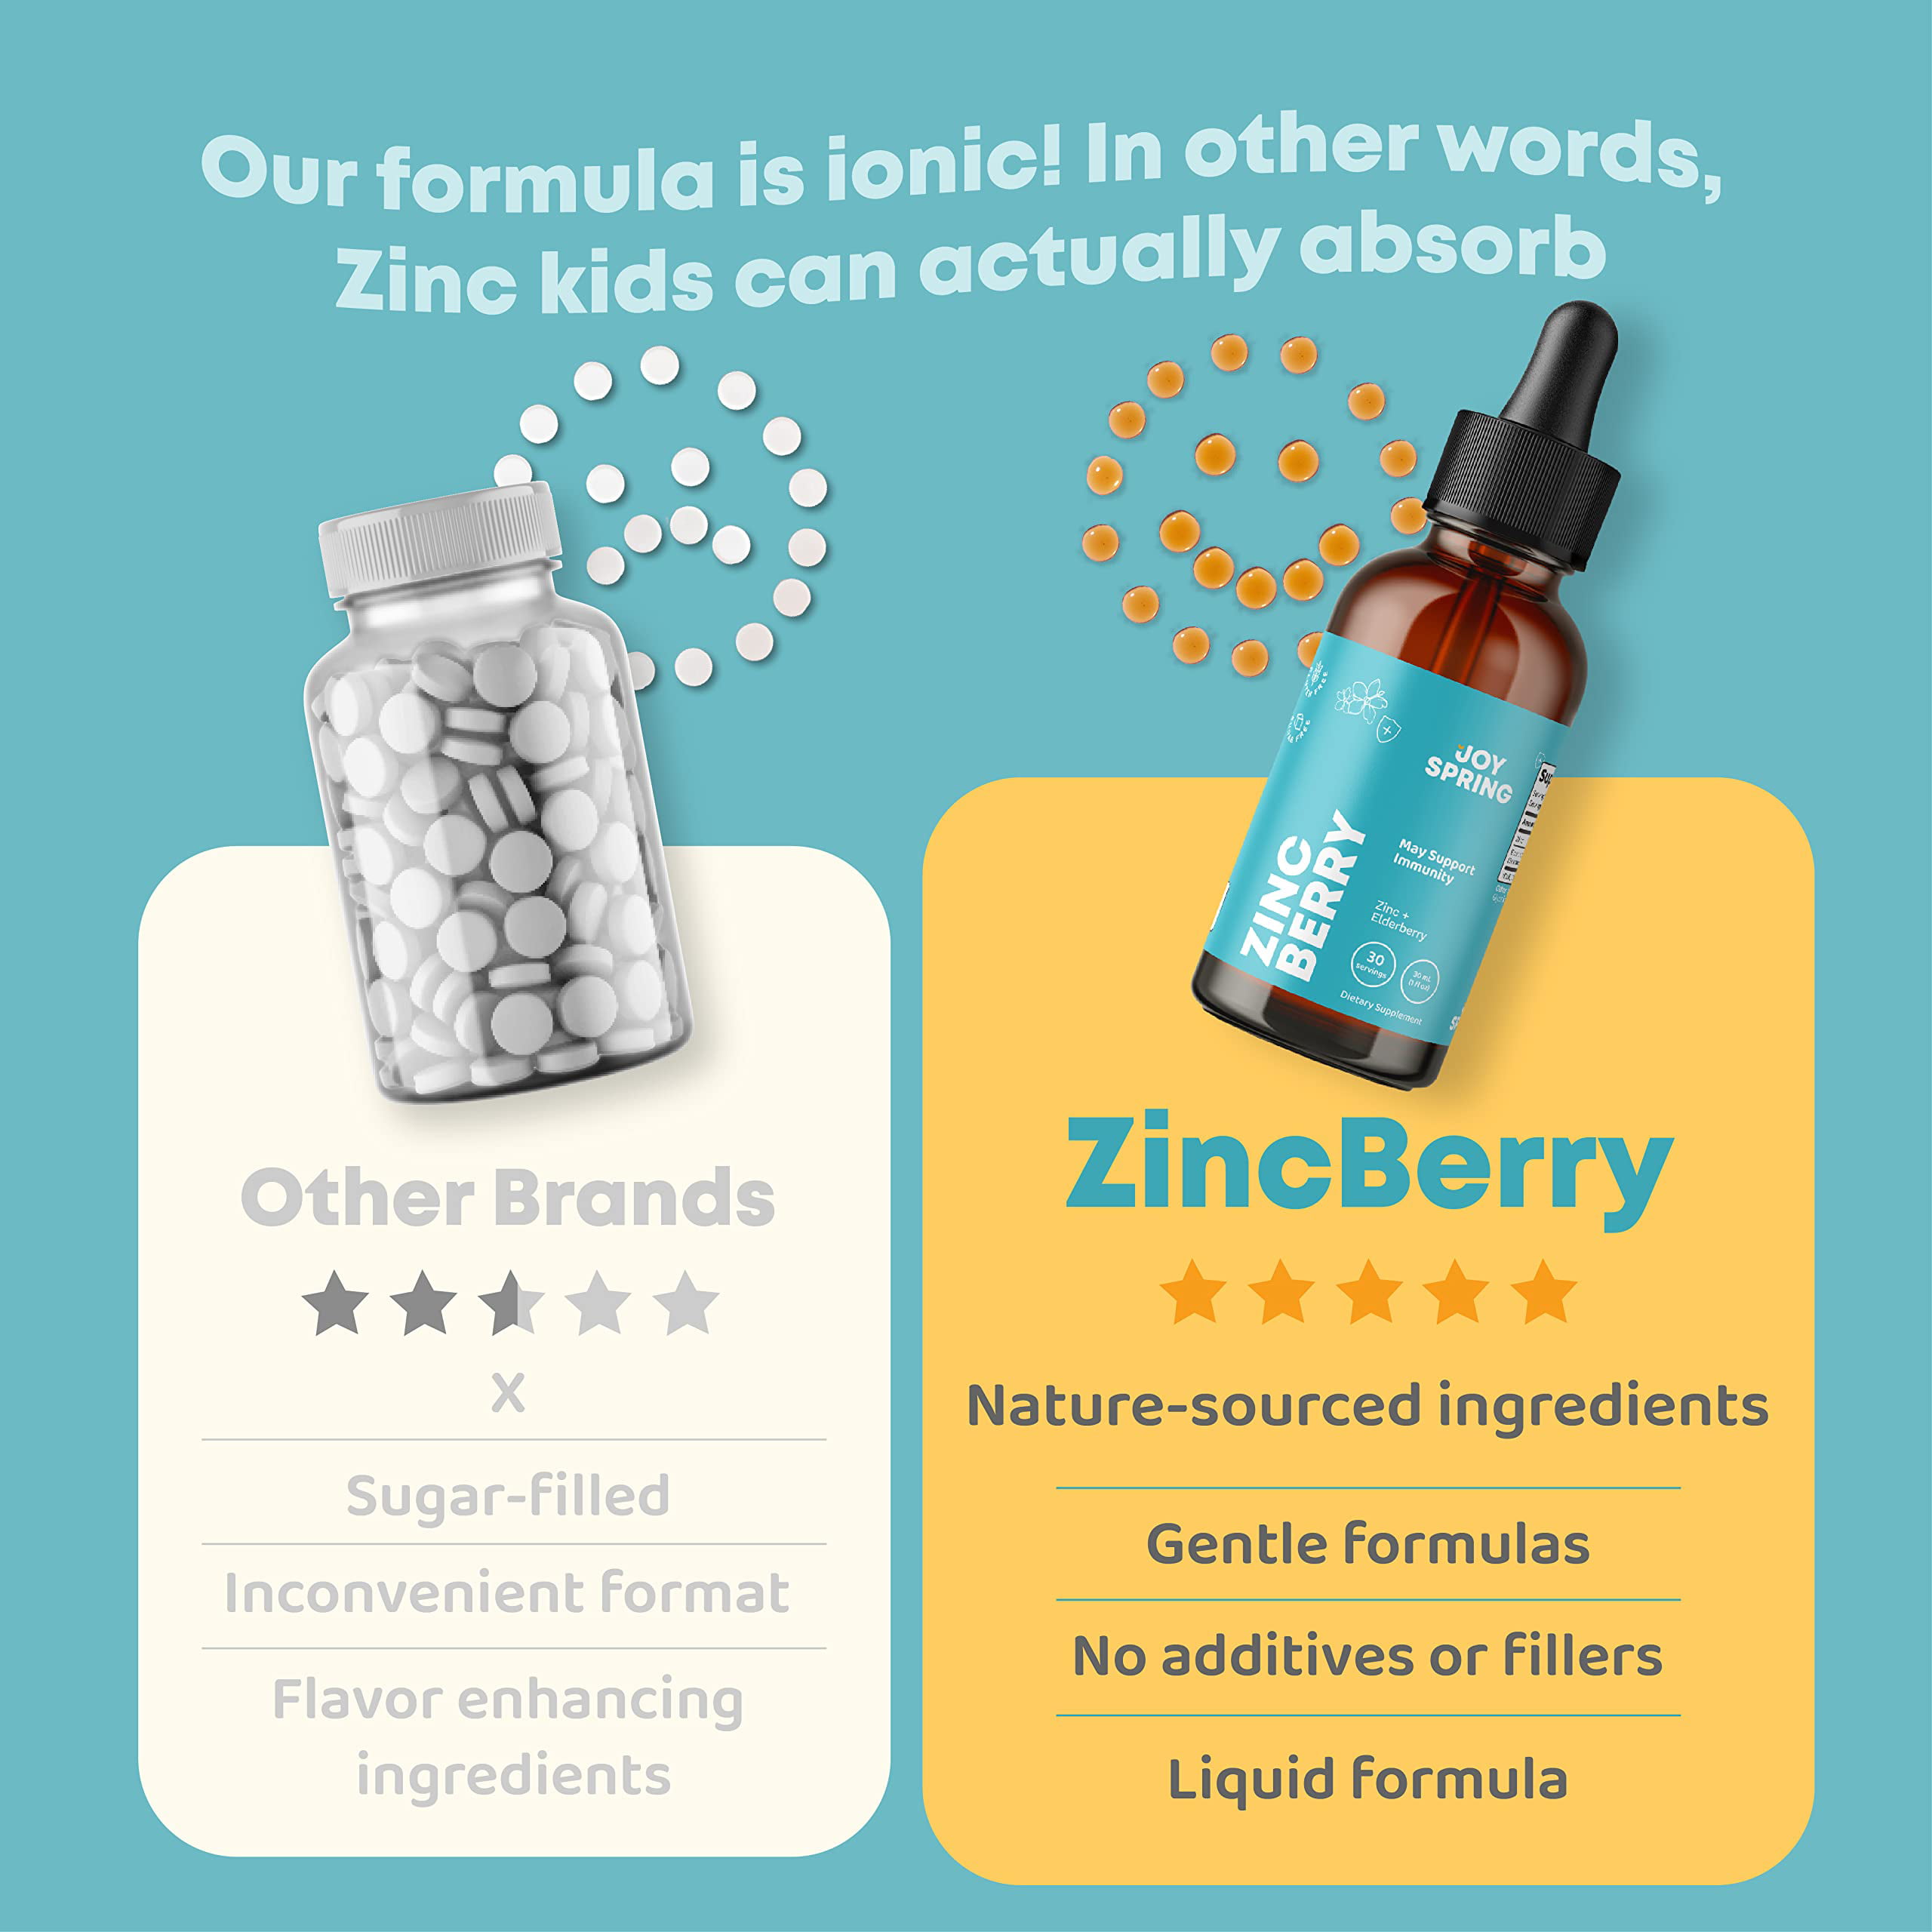 Immunity Gummies & Liquid Zinc Bundle by MaryRuth's | 5-in-1 Sugar Free  Immunity Gummies, 90ct | Ionic Zinc Sulfate Drops + Organic Glycerin, 4oz 